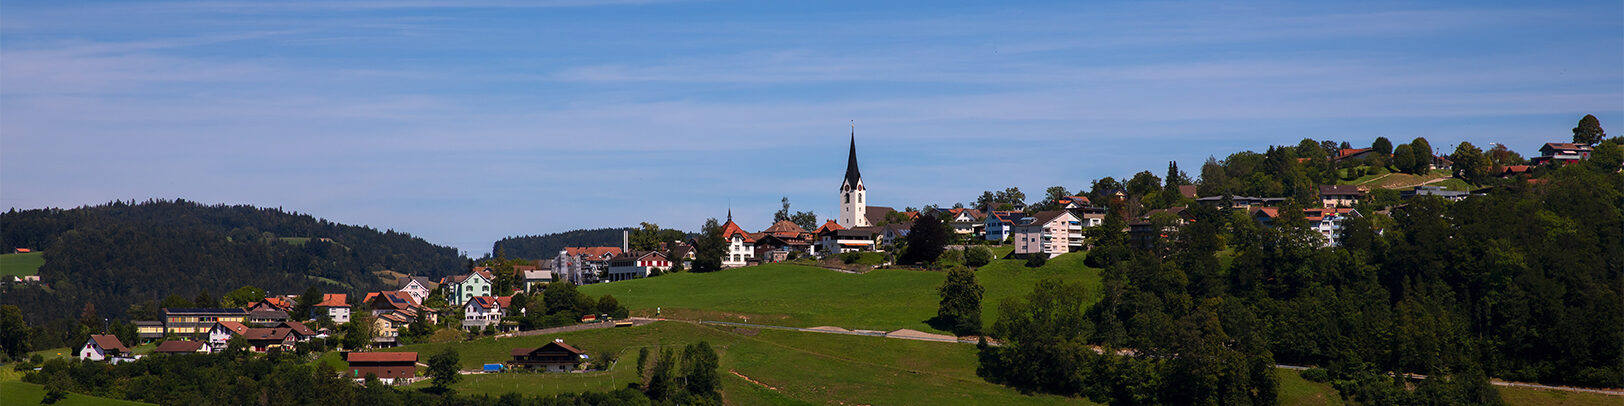 Bildausschnitt Mogelsberg mit Kirche